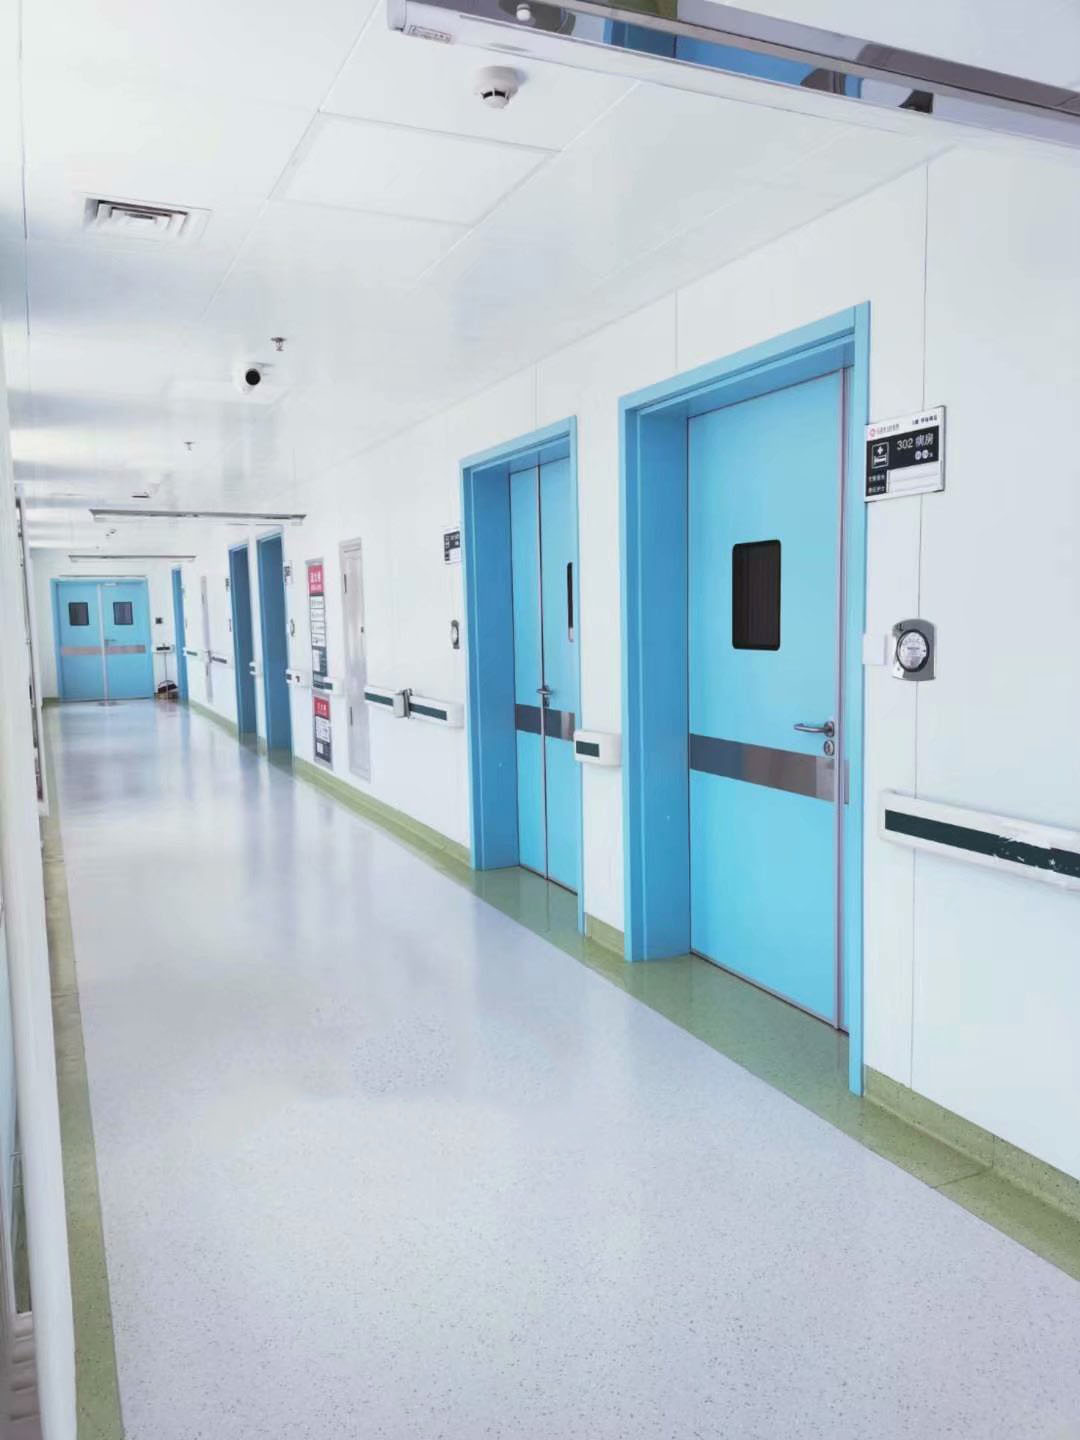 Manual Swing Hospital Doors